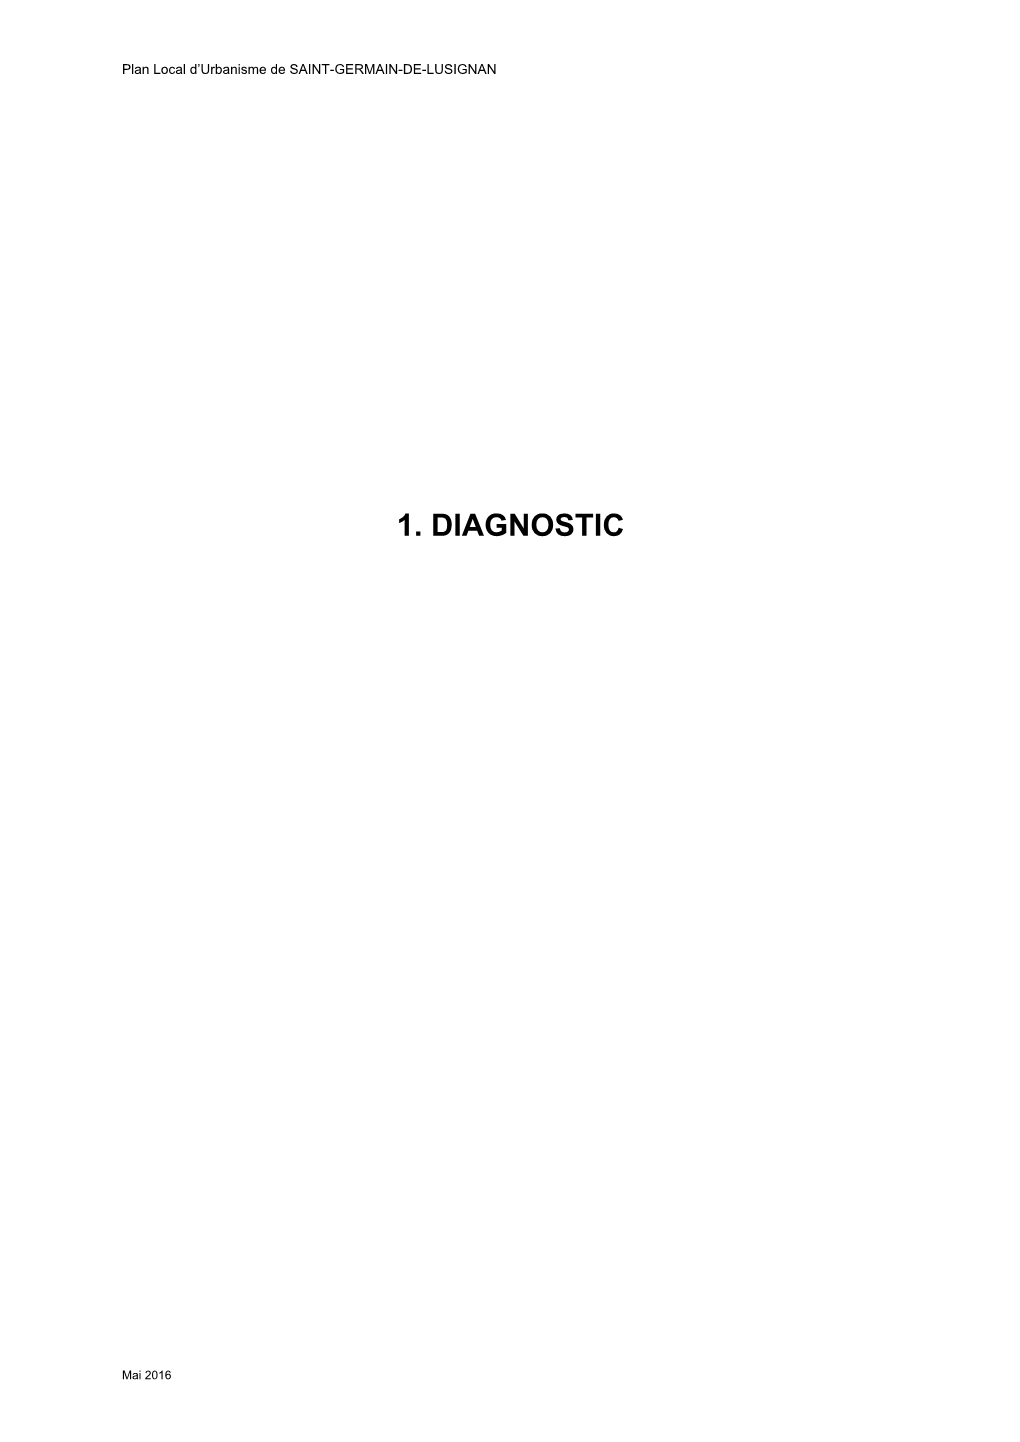 1. Diagnostic